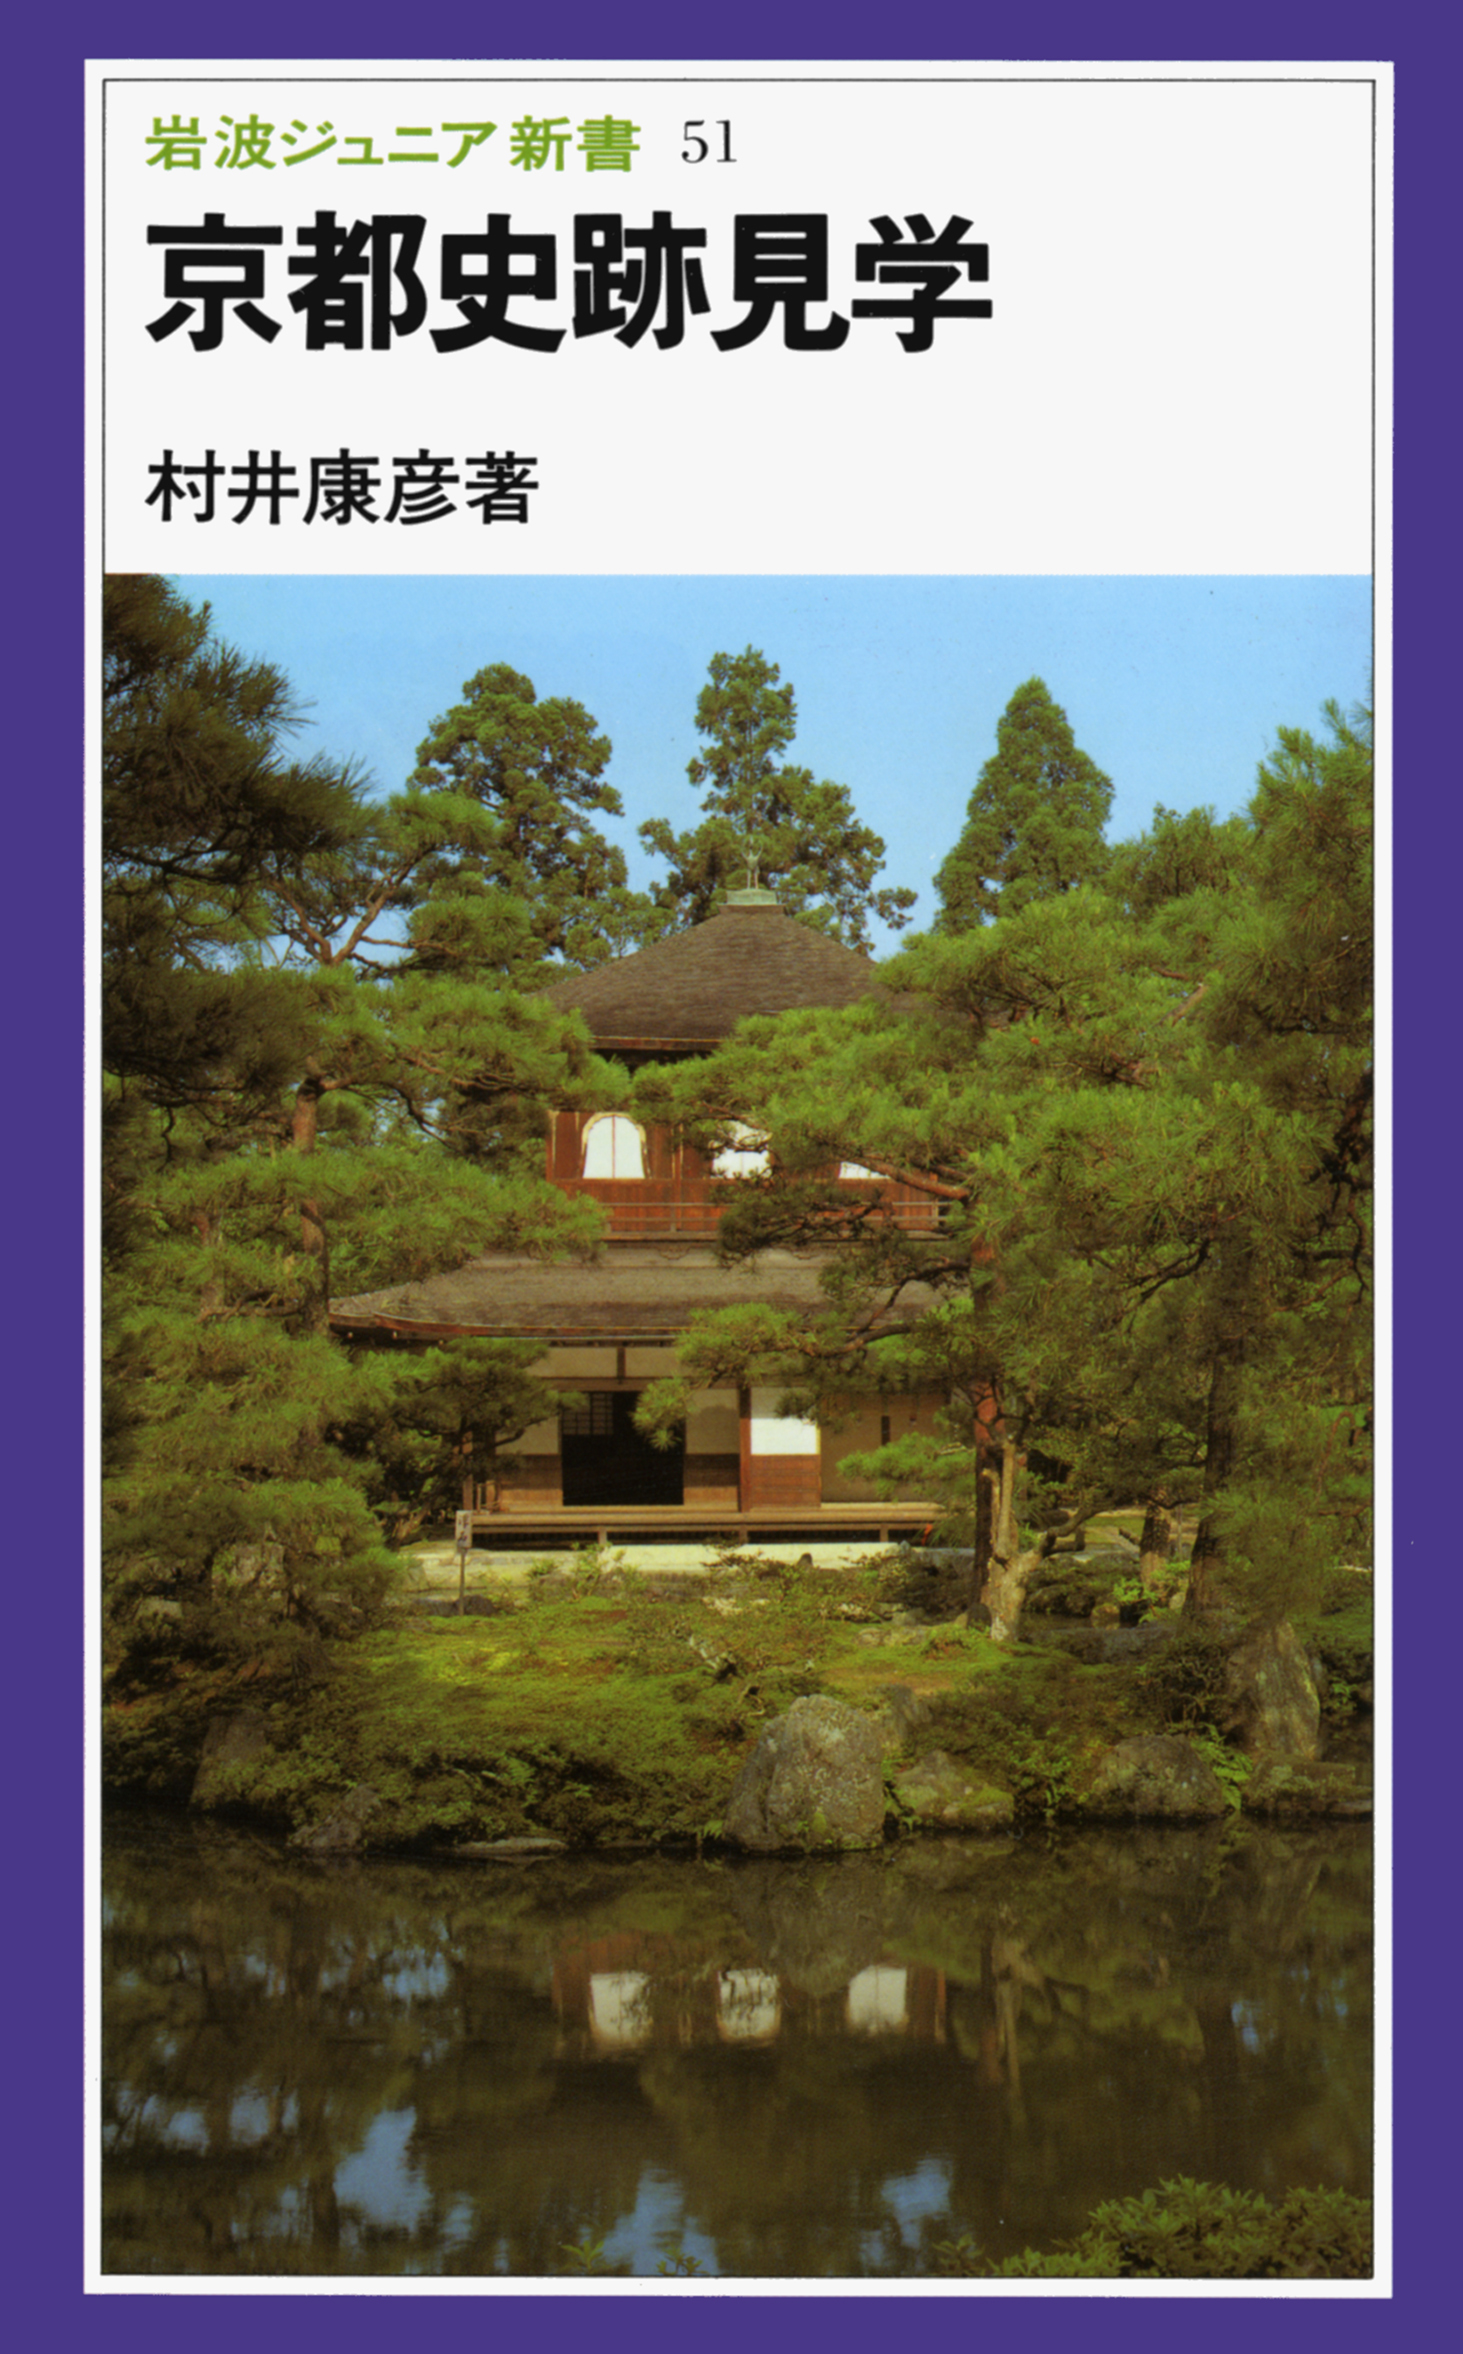 京都史跡見学の商品画像